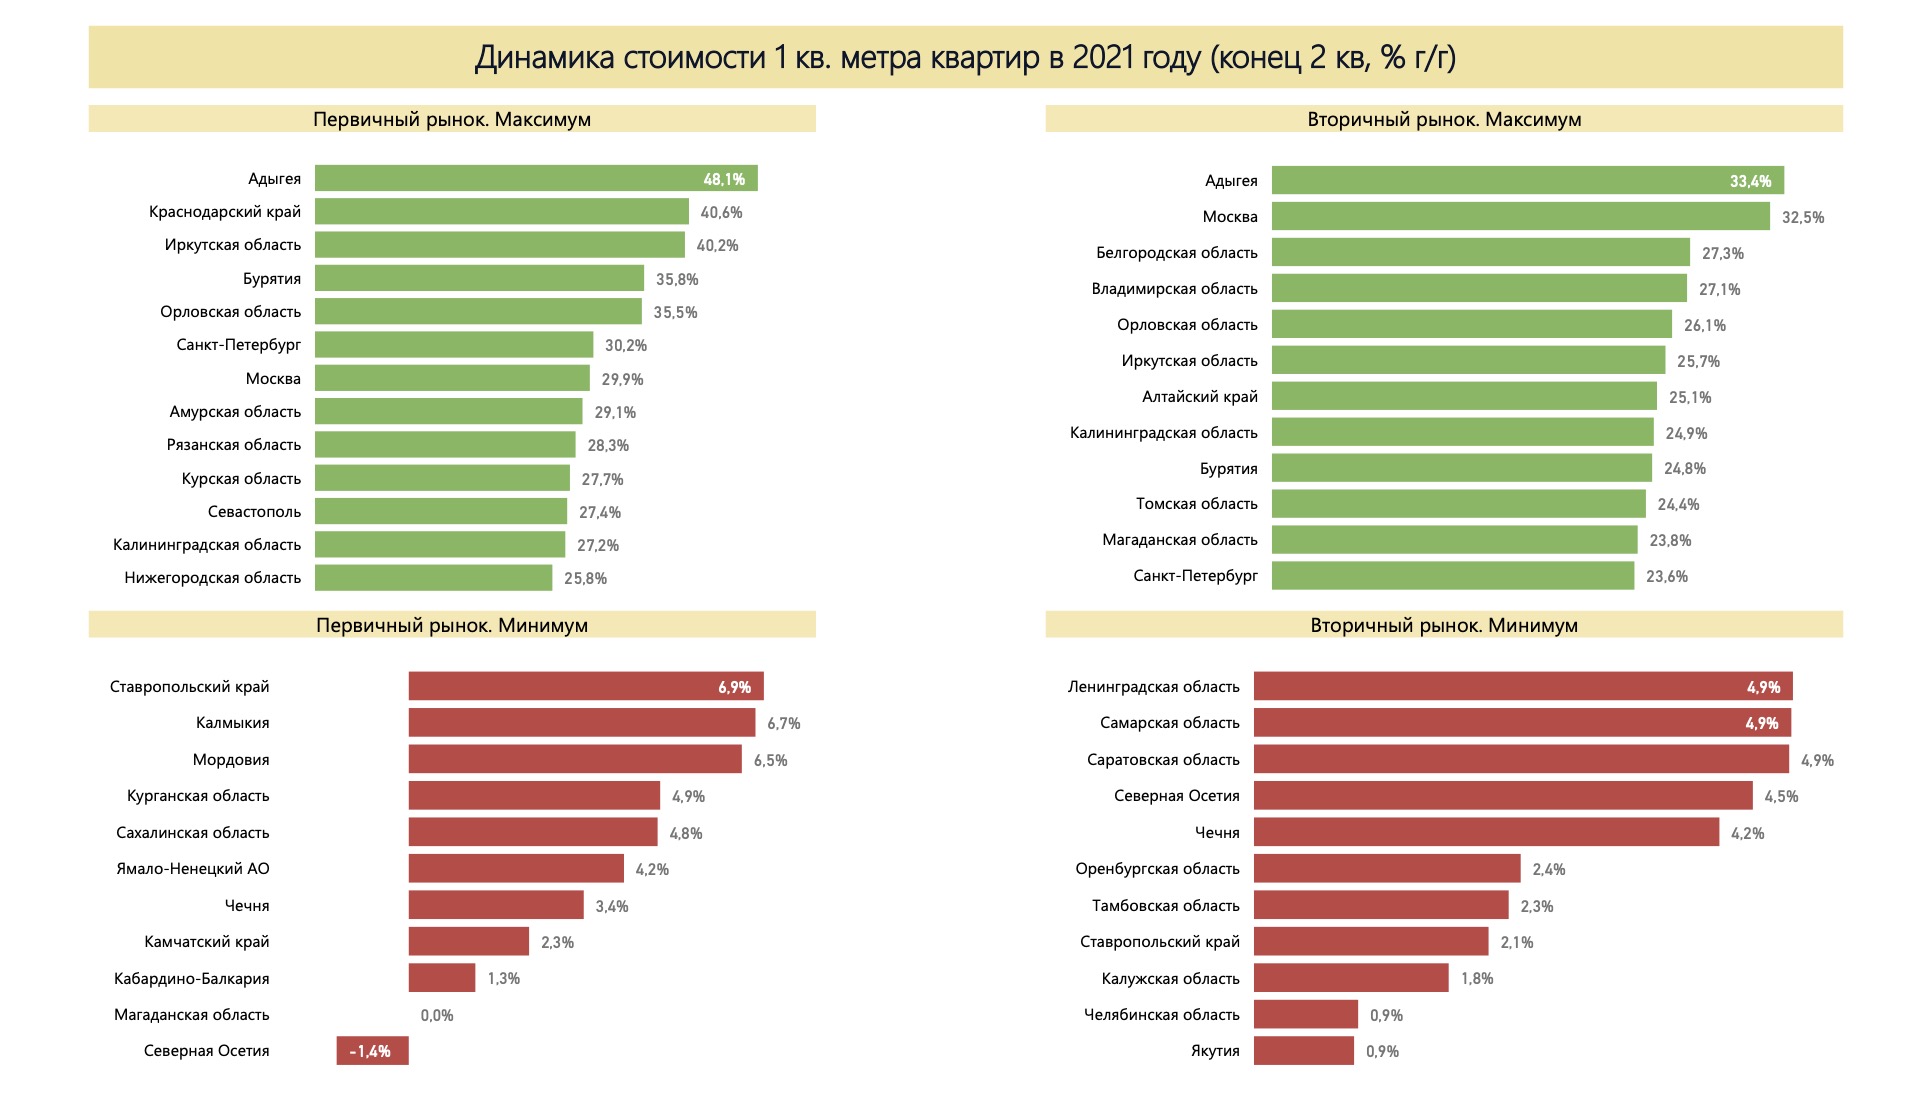 Динамика стоимости квартир в регионах России. Источник: расчет автора по данным Росстат